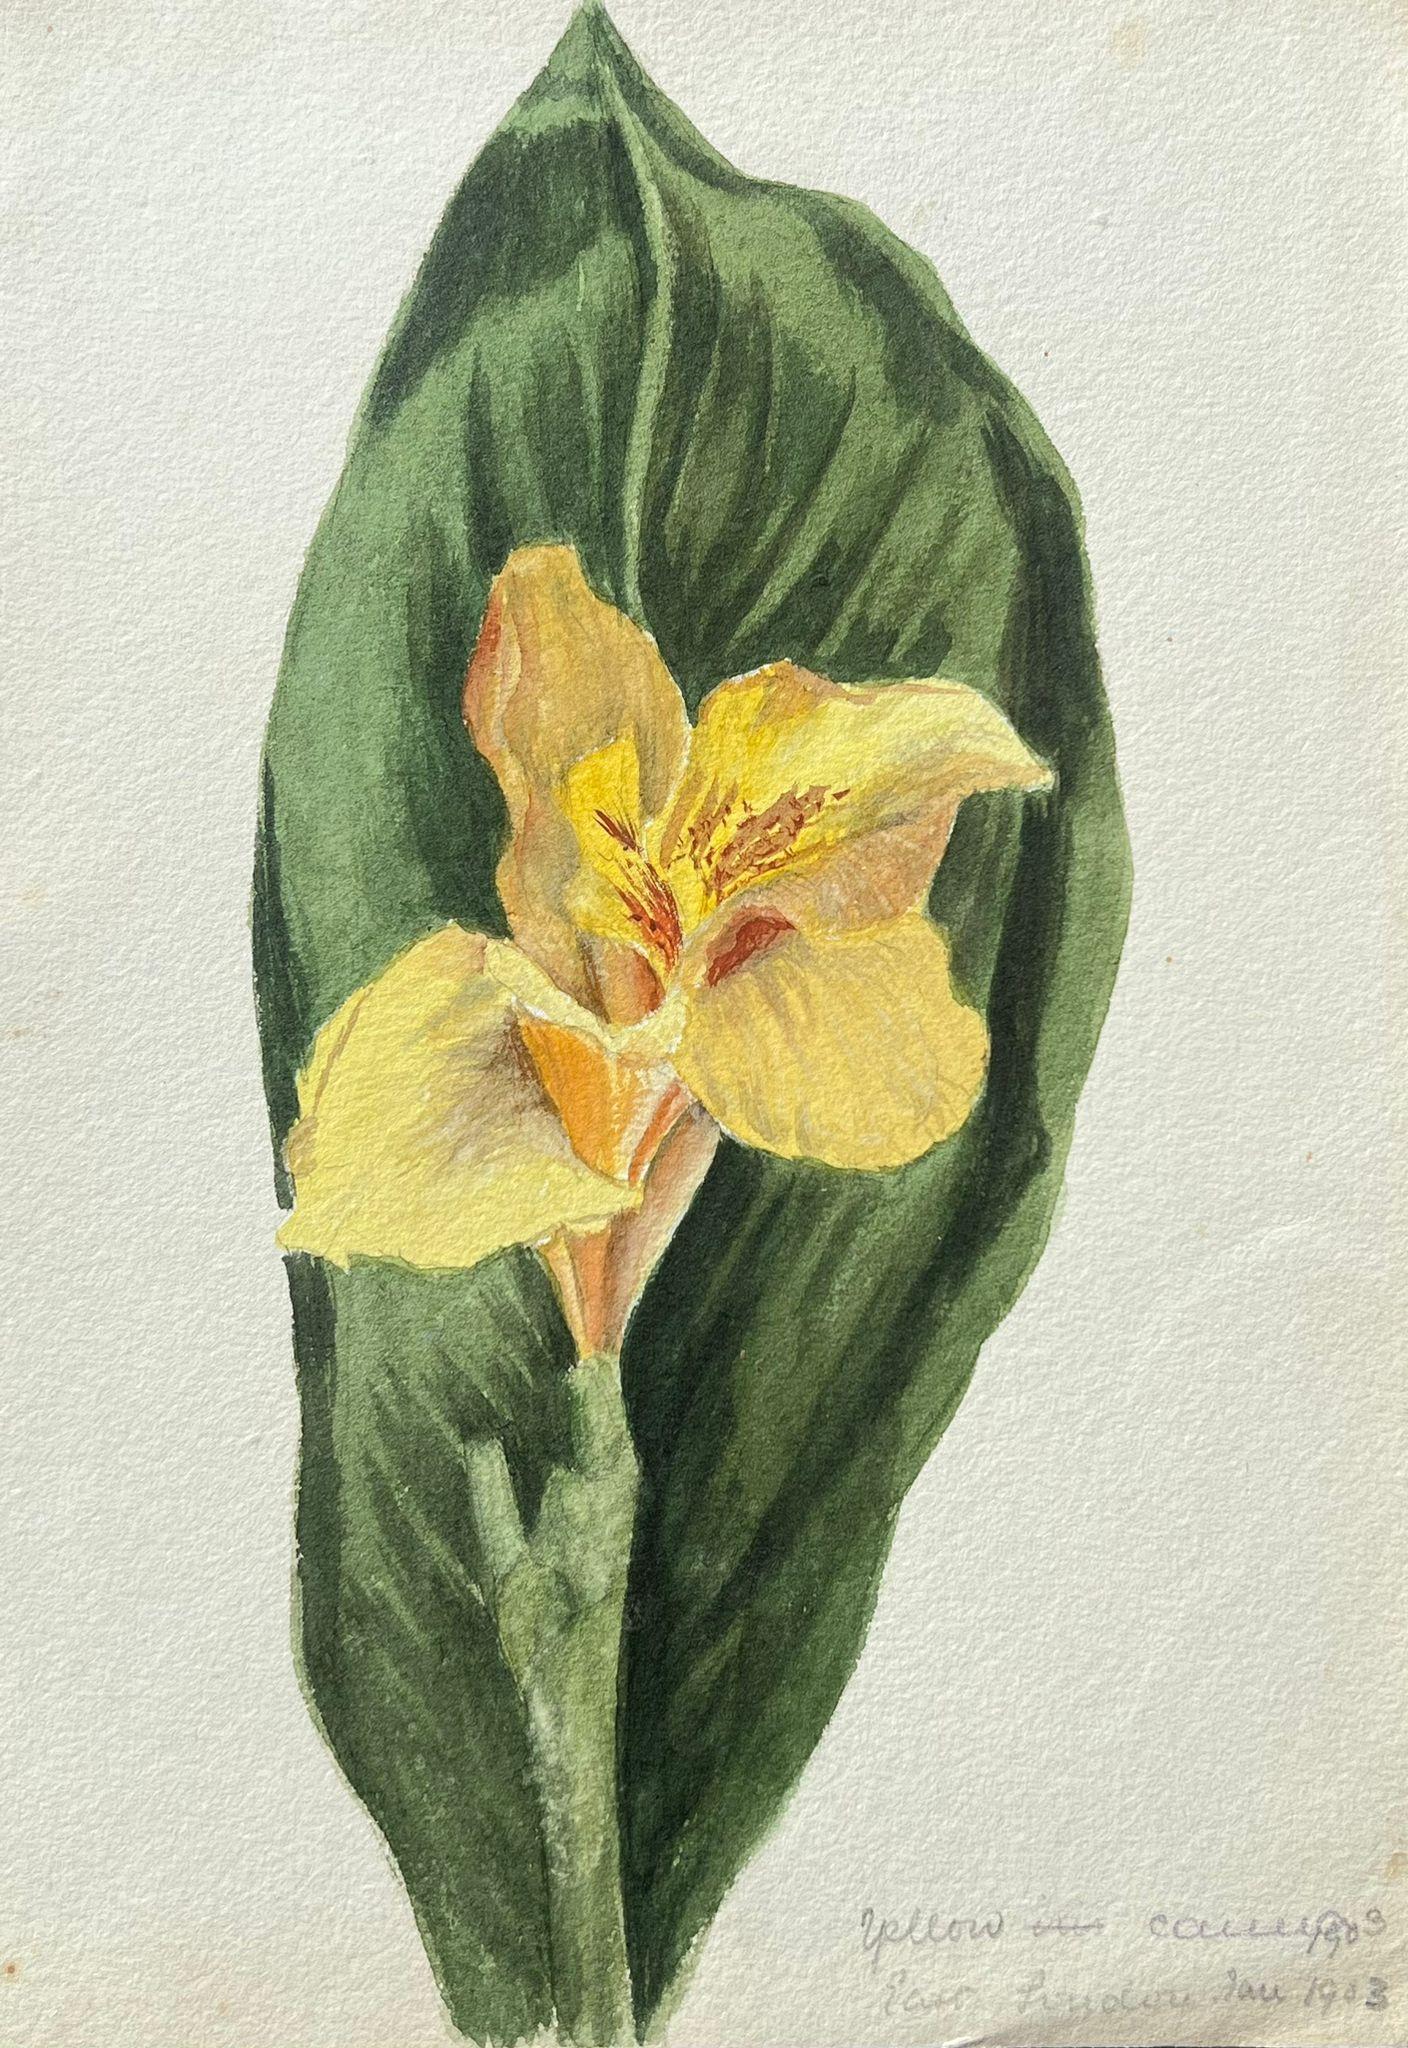 Still-Life Painting Caroline Worsley - Belle peinture botanique britannique ancienne représentant un seul daffodil